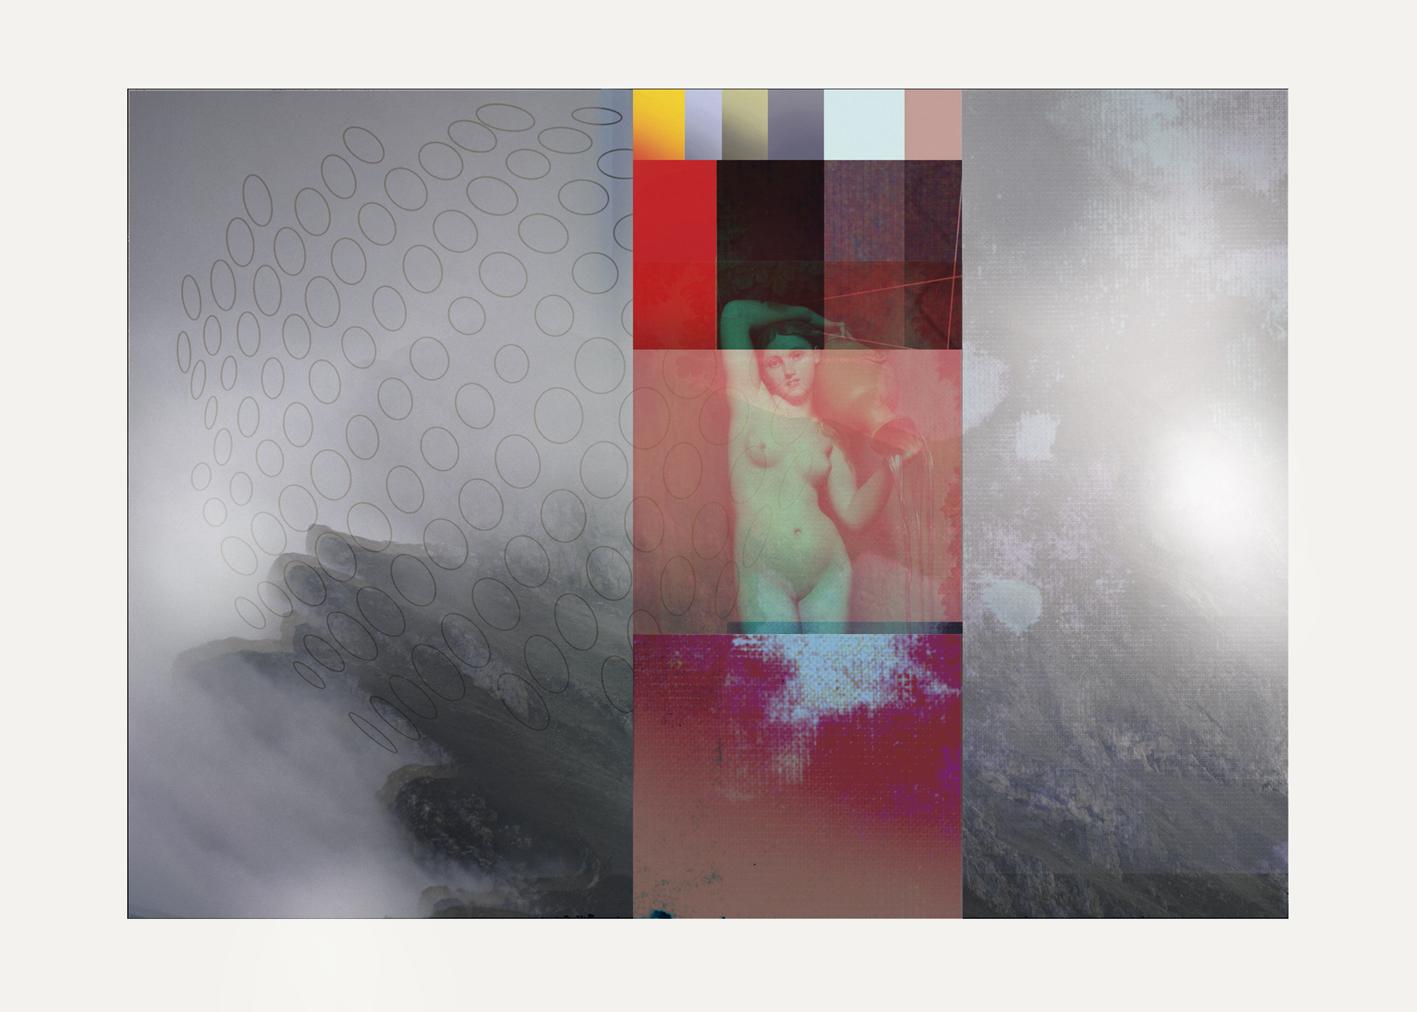  F102 - Zeitgenössisch, Abstrakt, Expressionistisch, Modern, Pop Art, Surrealistisch, 